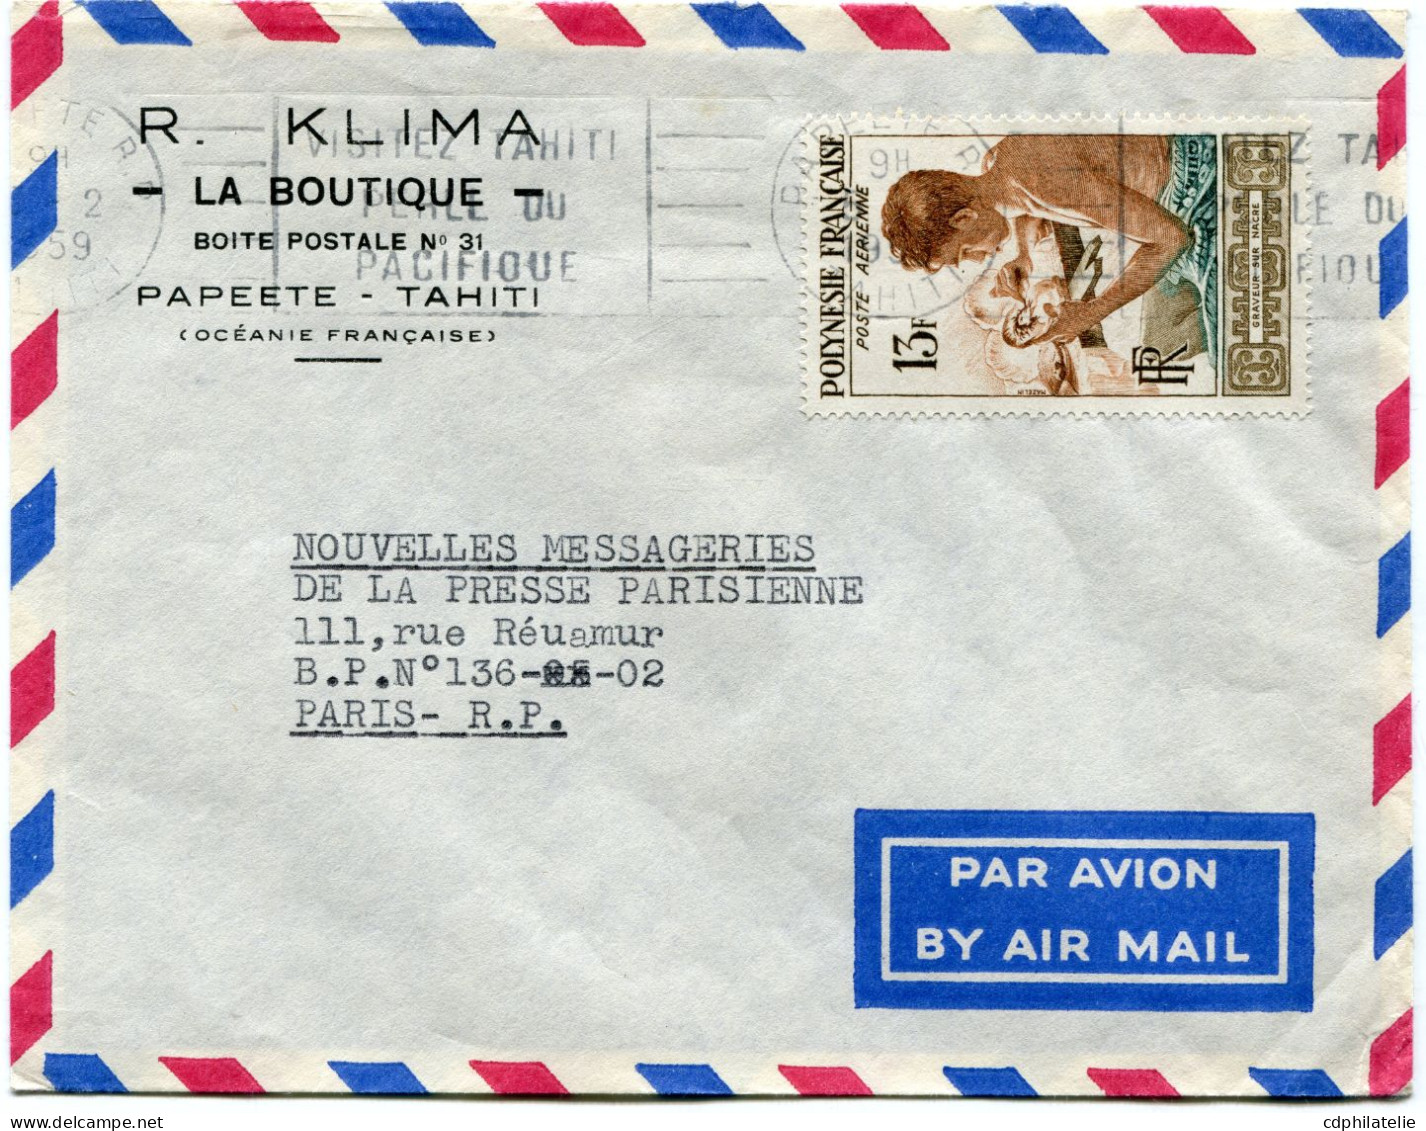 POLYNESIE FRANCAISE LETTRE PAR AVION DEPART PAPEETE 5-2-1959 POUR LA FRANCE - Lettres & Documents